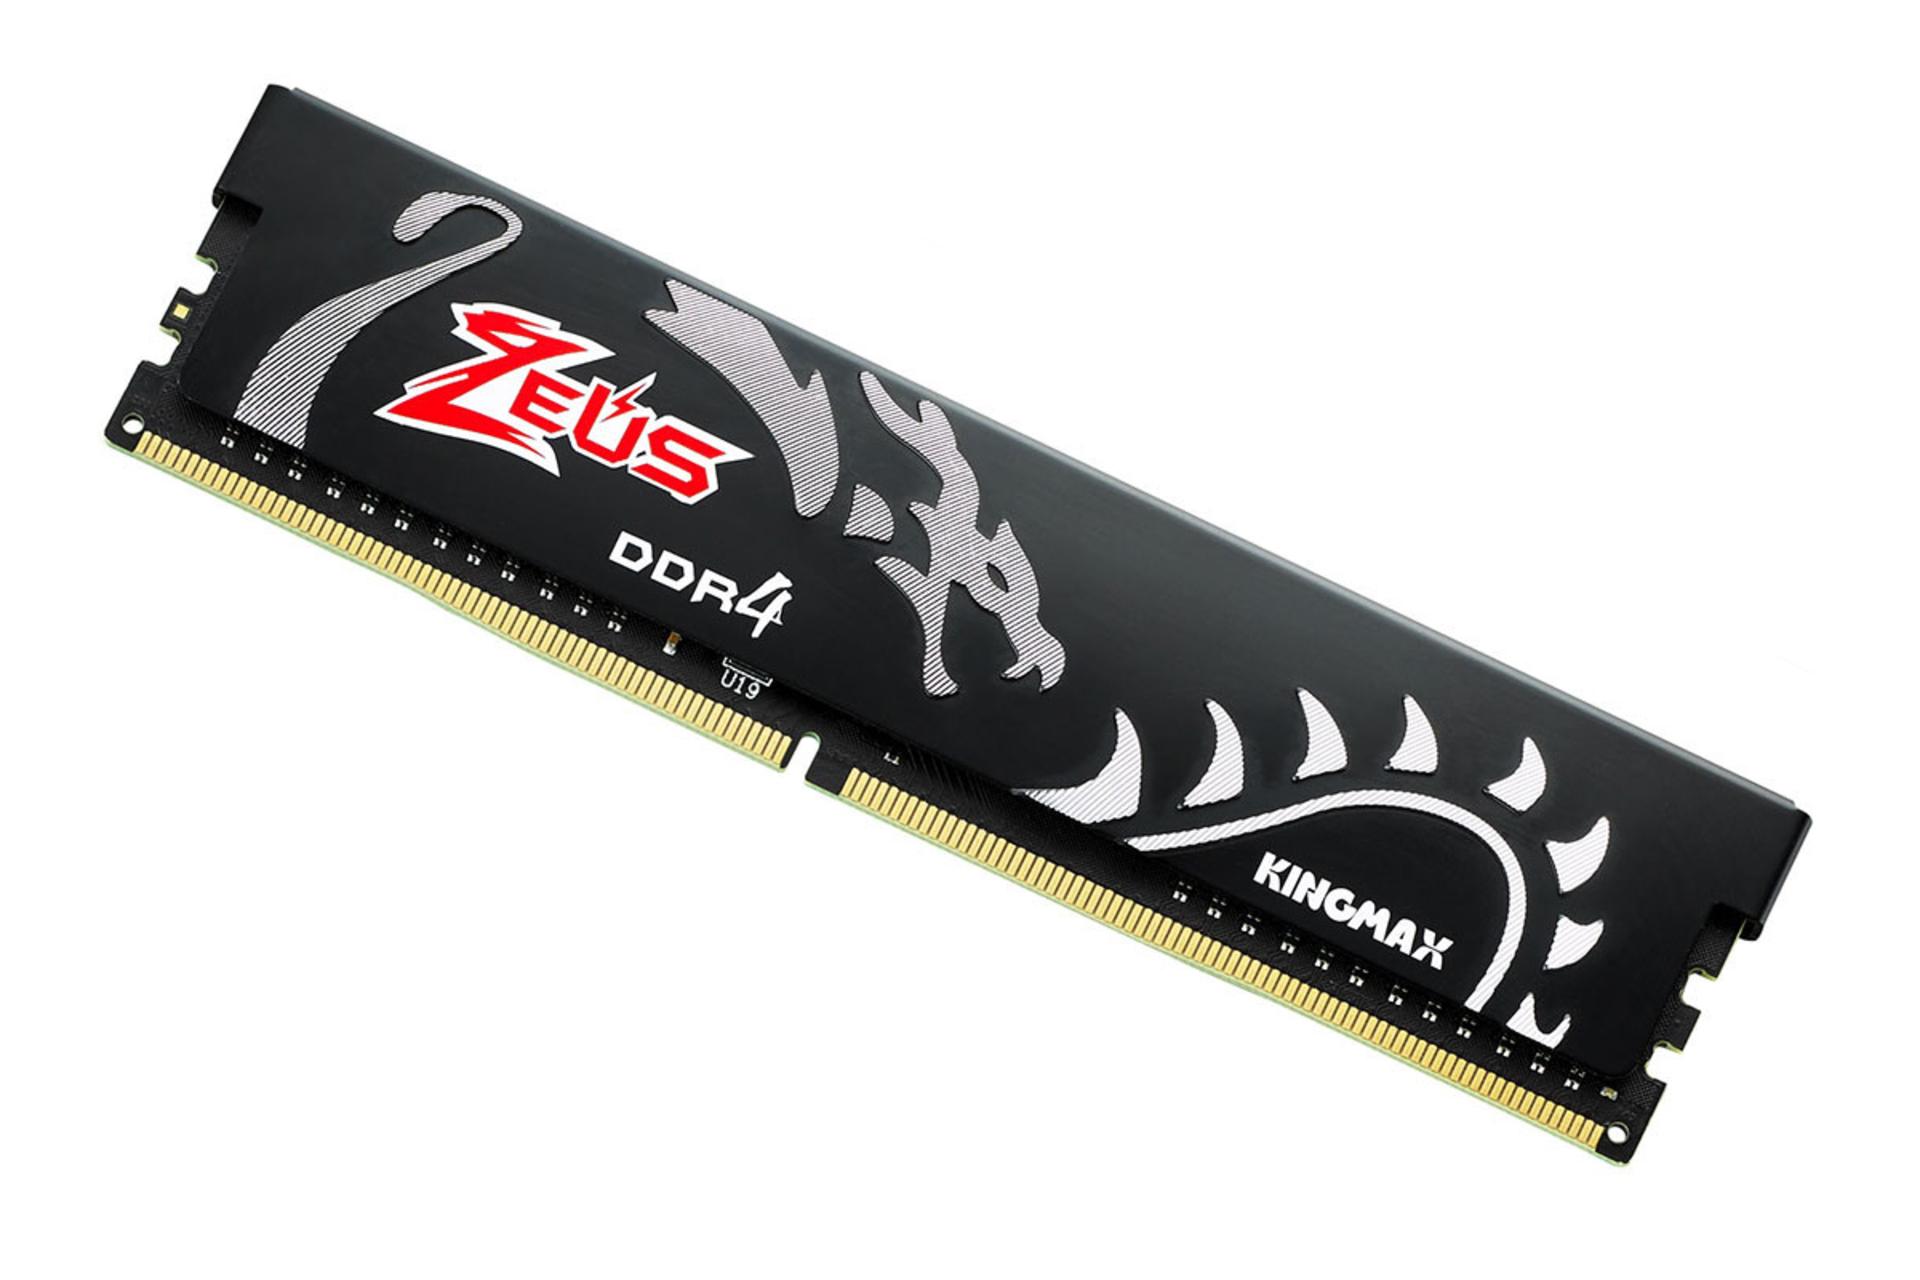 نمای نزدیک رم کینگ مکس Zeus Dragon ظرفیت 16 گیگابایت از نوع DDR4-3200